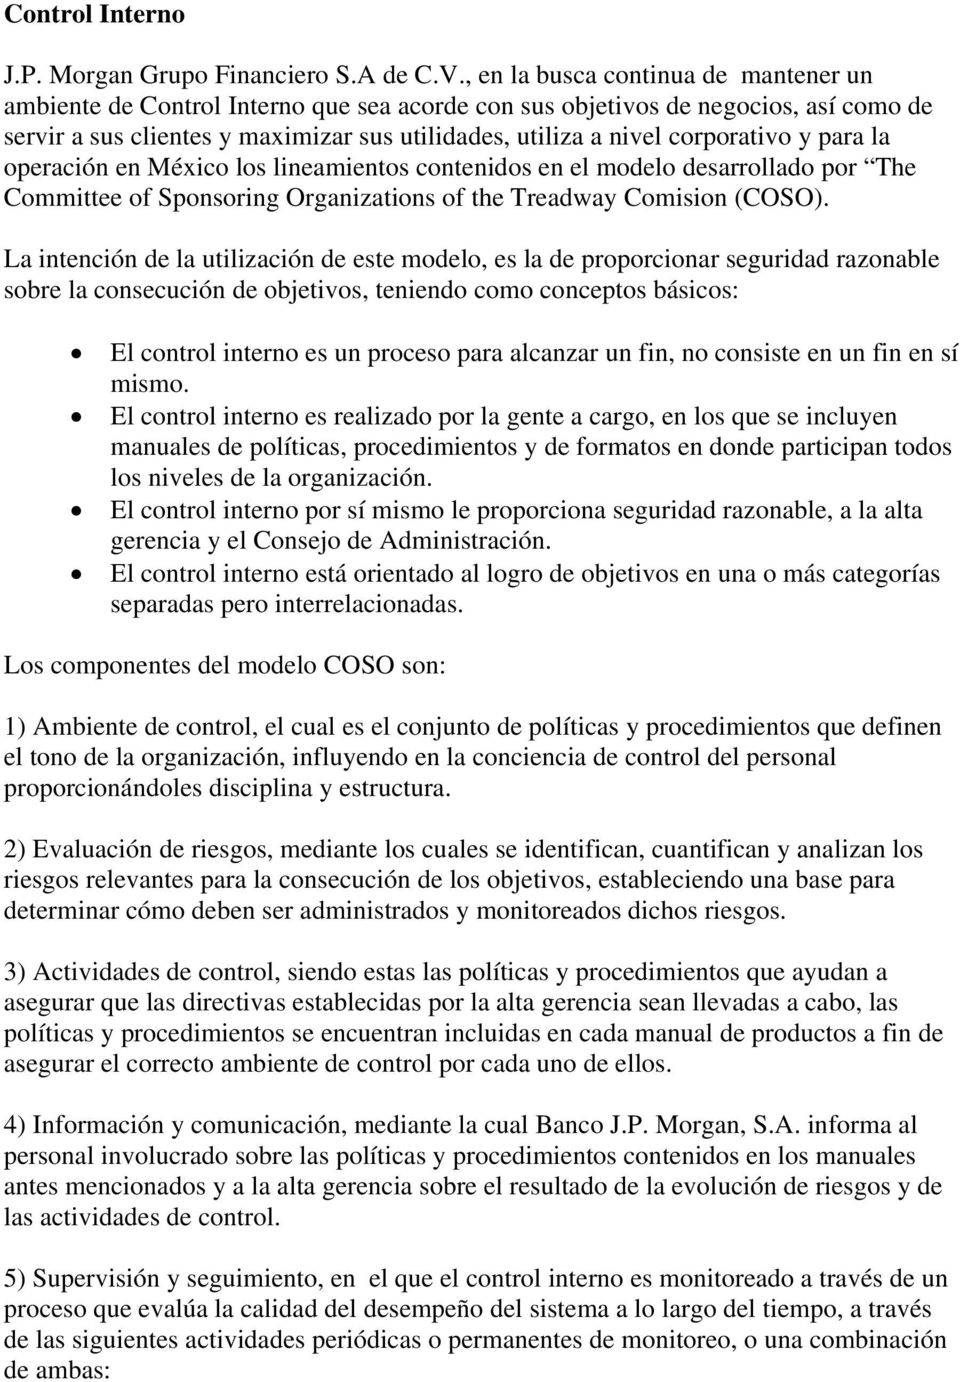 corporativo y para la operación en México los lineamientos contenidos en el modelo desarrollado por The Committee of Sponsoring Organizations of the Treadway Comision (COSO).